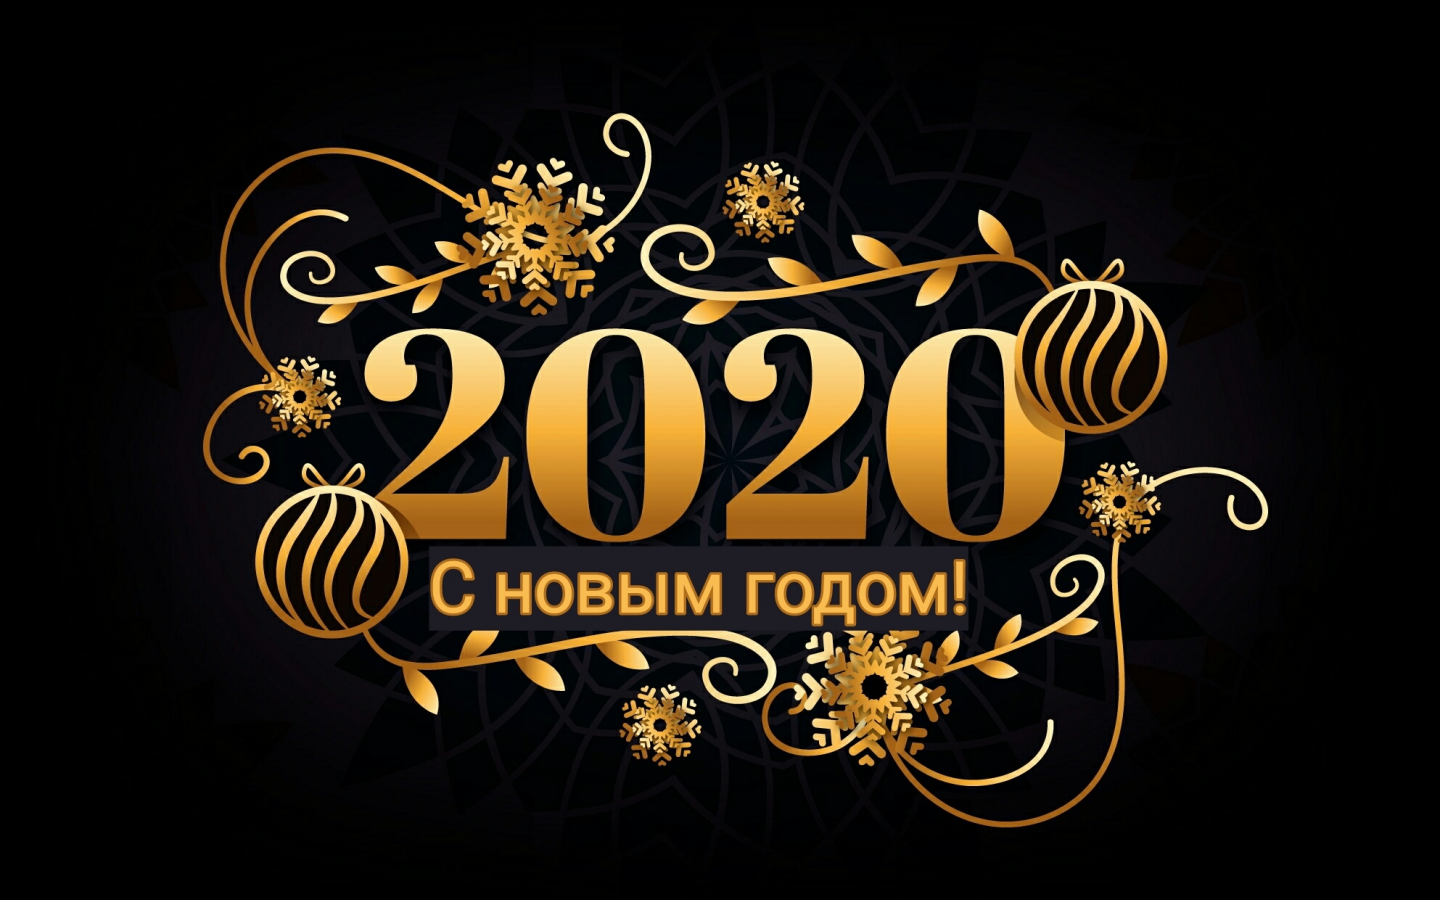 праздник, новый год 2020